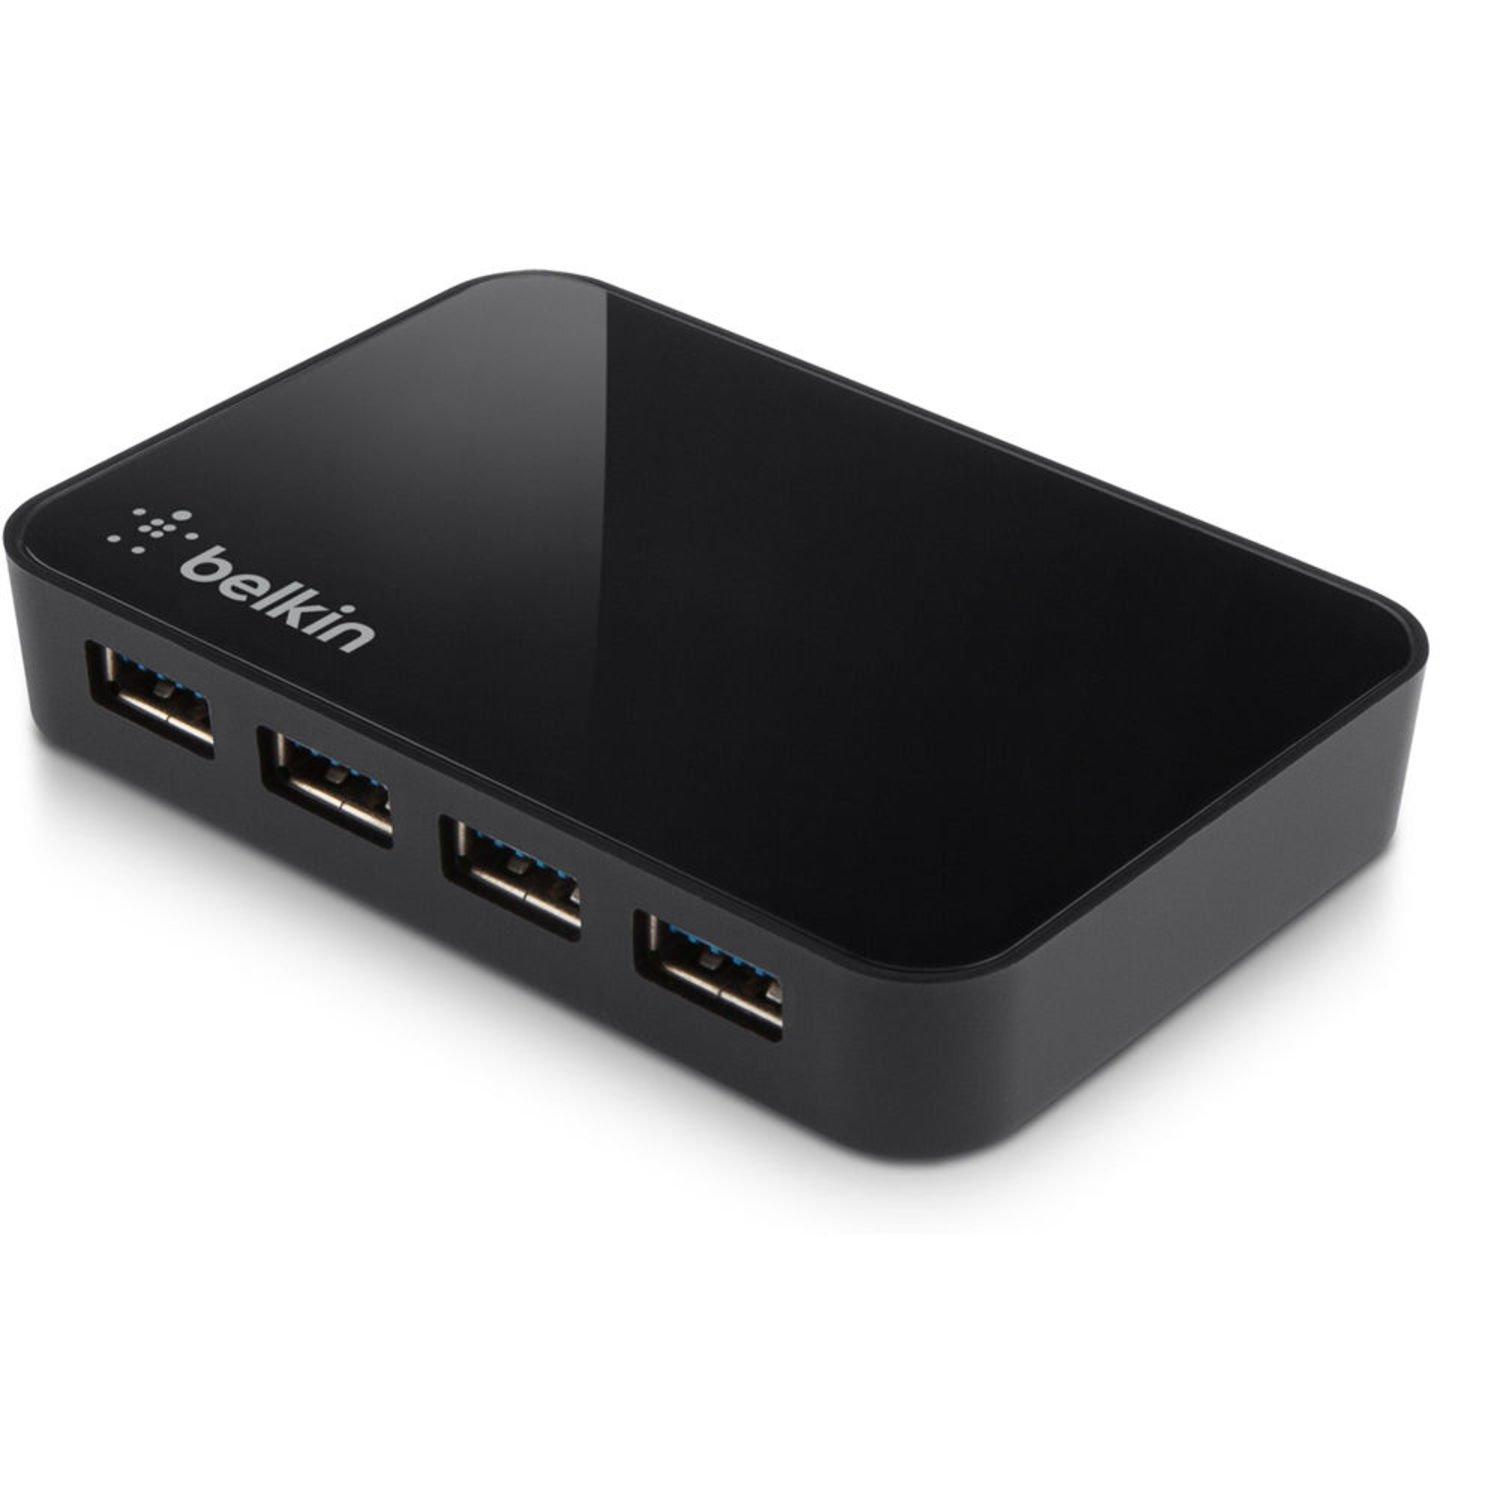 Belkin 4 Port USB Hub N10117-New Open Box 